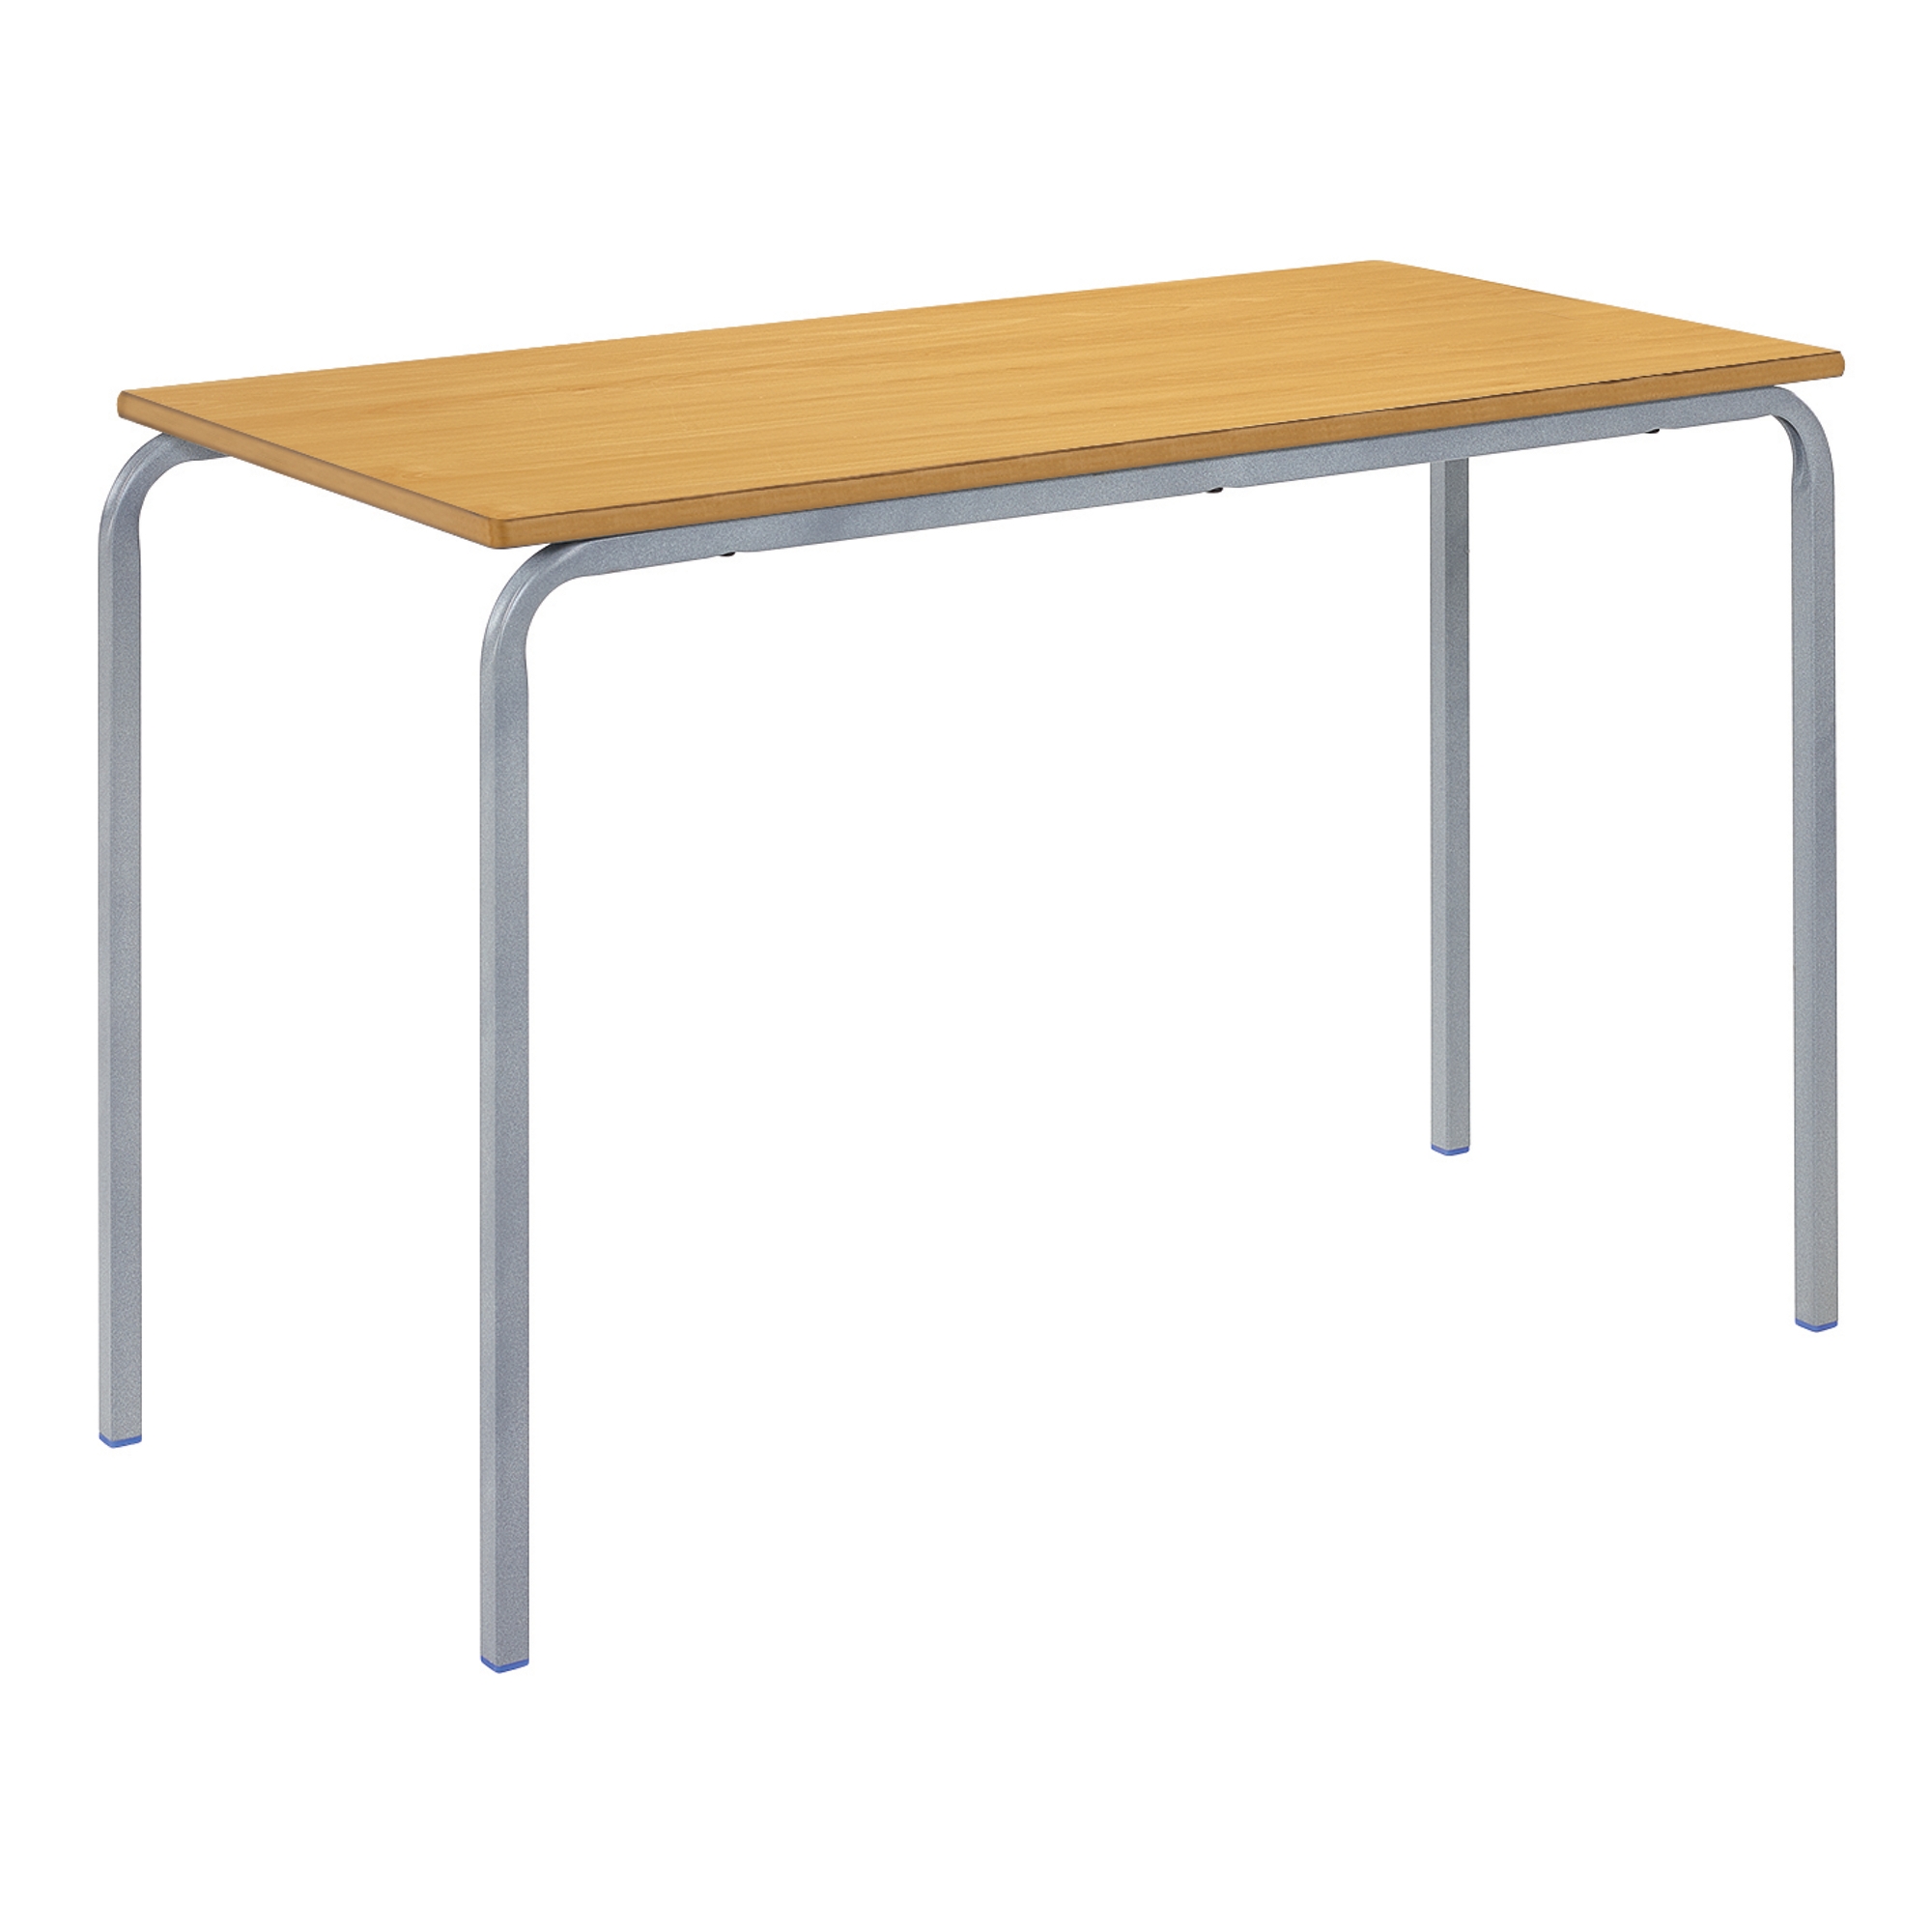 Classmates Rectangular Crushed Bent Classroom Table - 1100 x 550 x 590mm - Beech